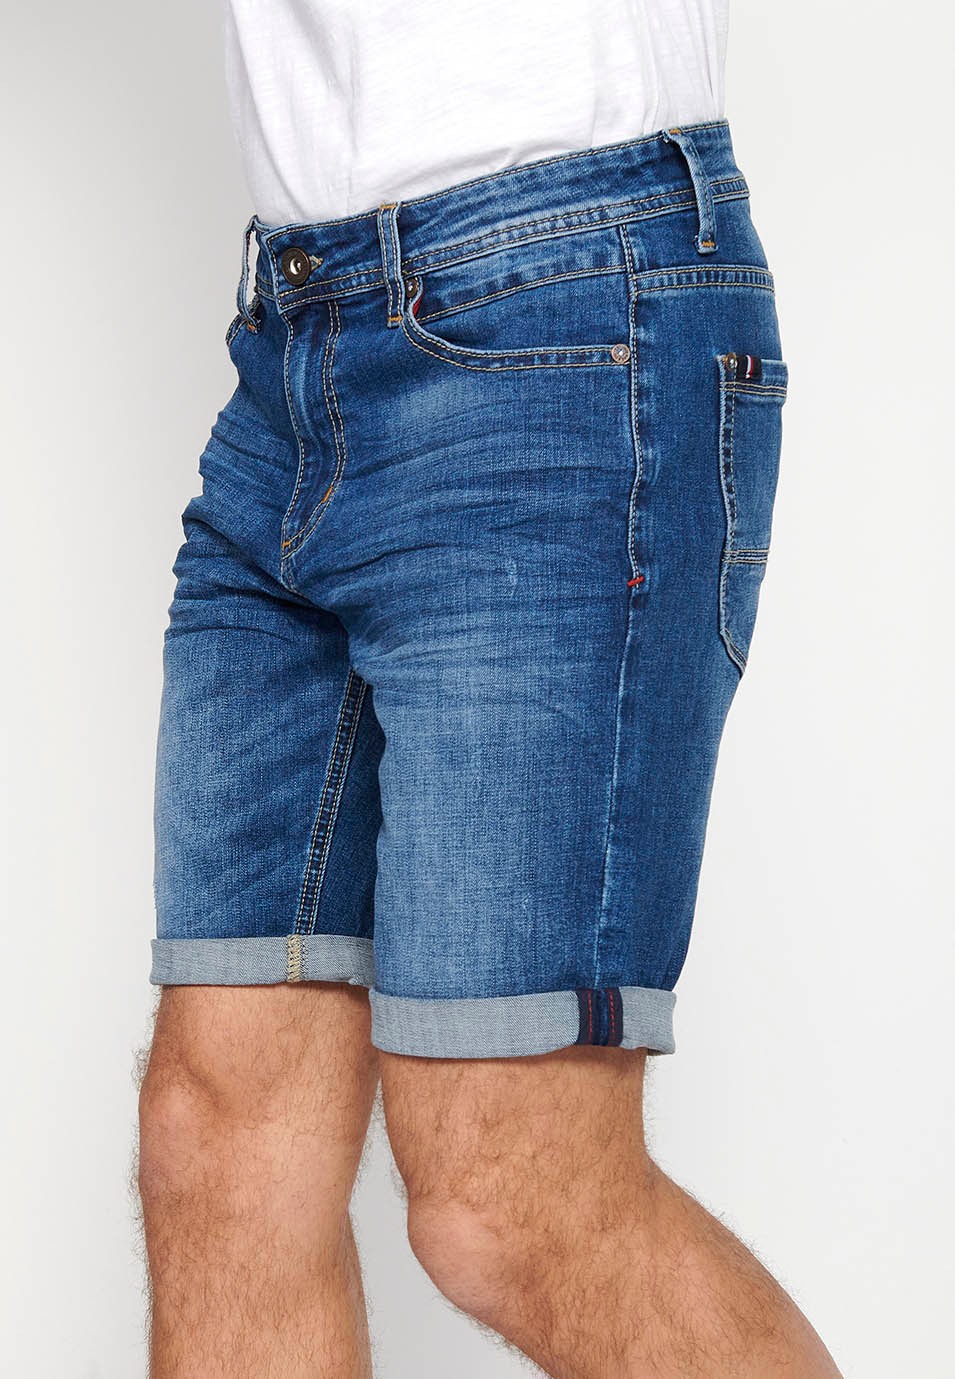 Bermuda-Jeansshorts mit Reißverschluss und Knopfverschluss vorne und fünf Taschen, eine blaue Tasche für Herren